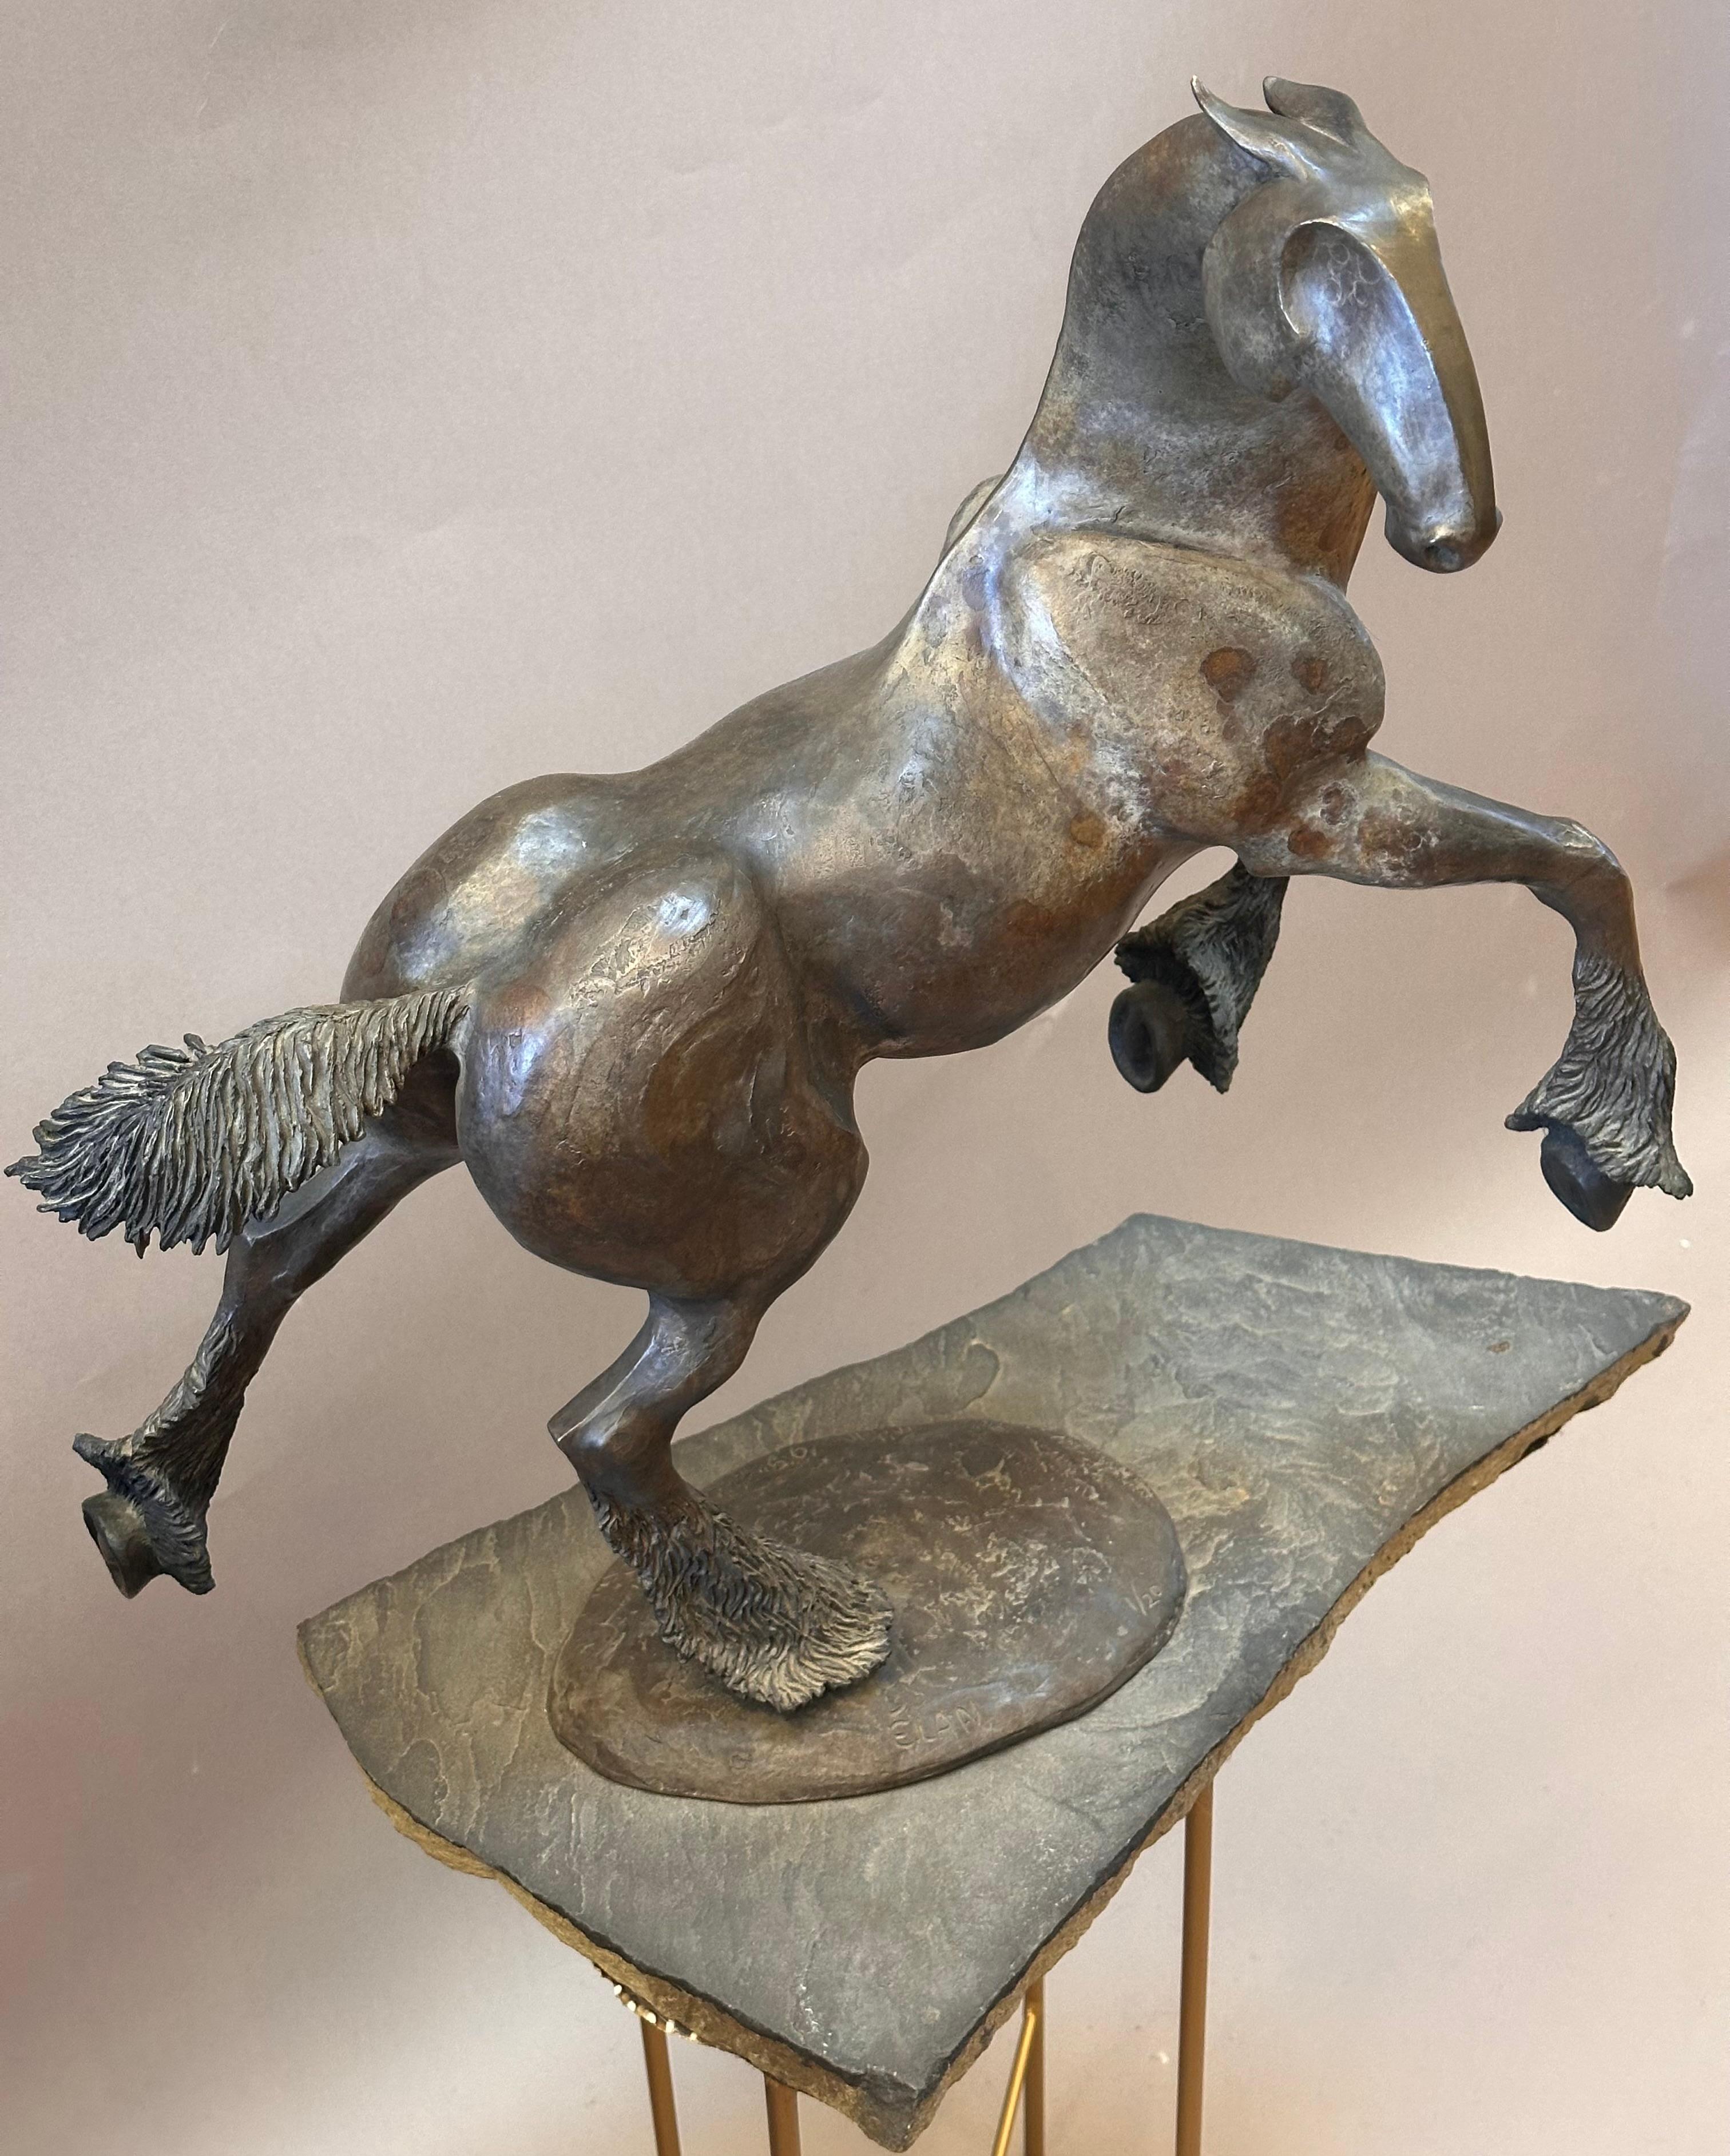 American Unique Bronze Horse Sculpture by Tahna cast 1999 Titled “Elan” For Sale